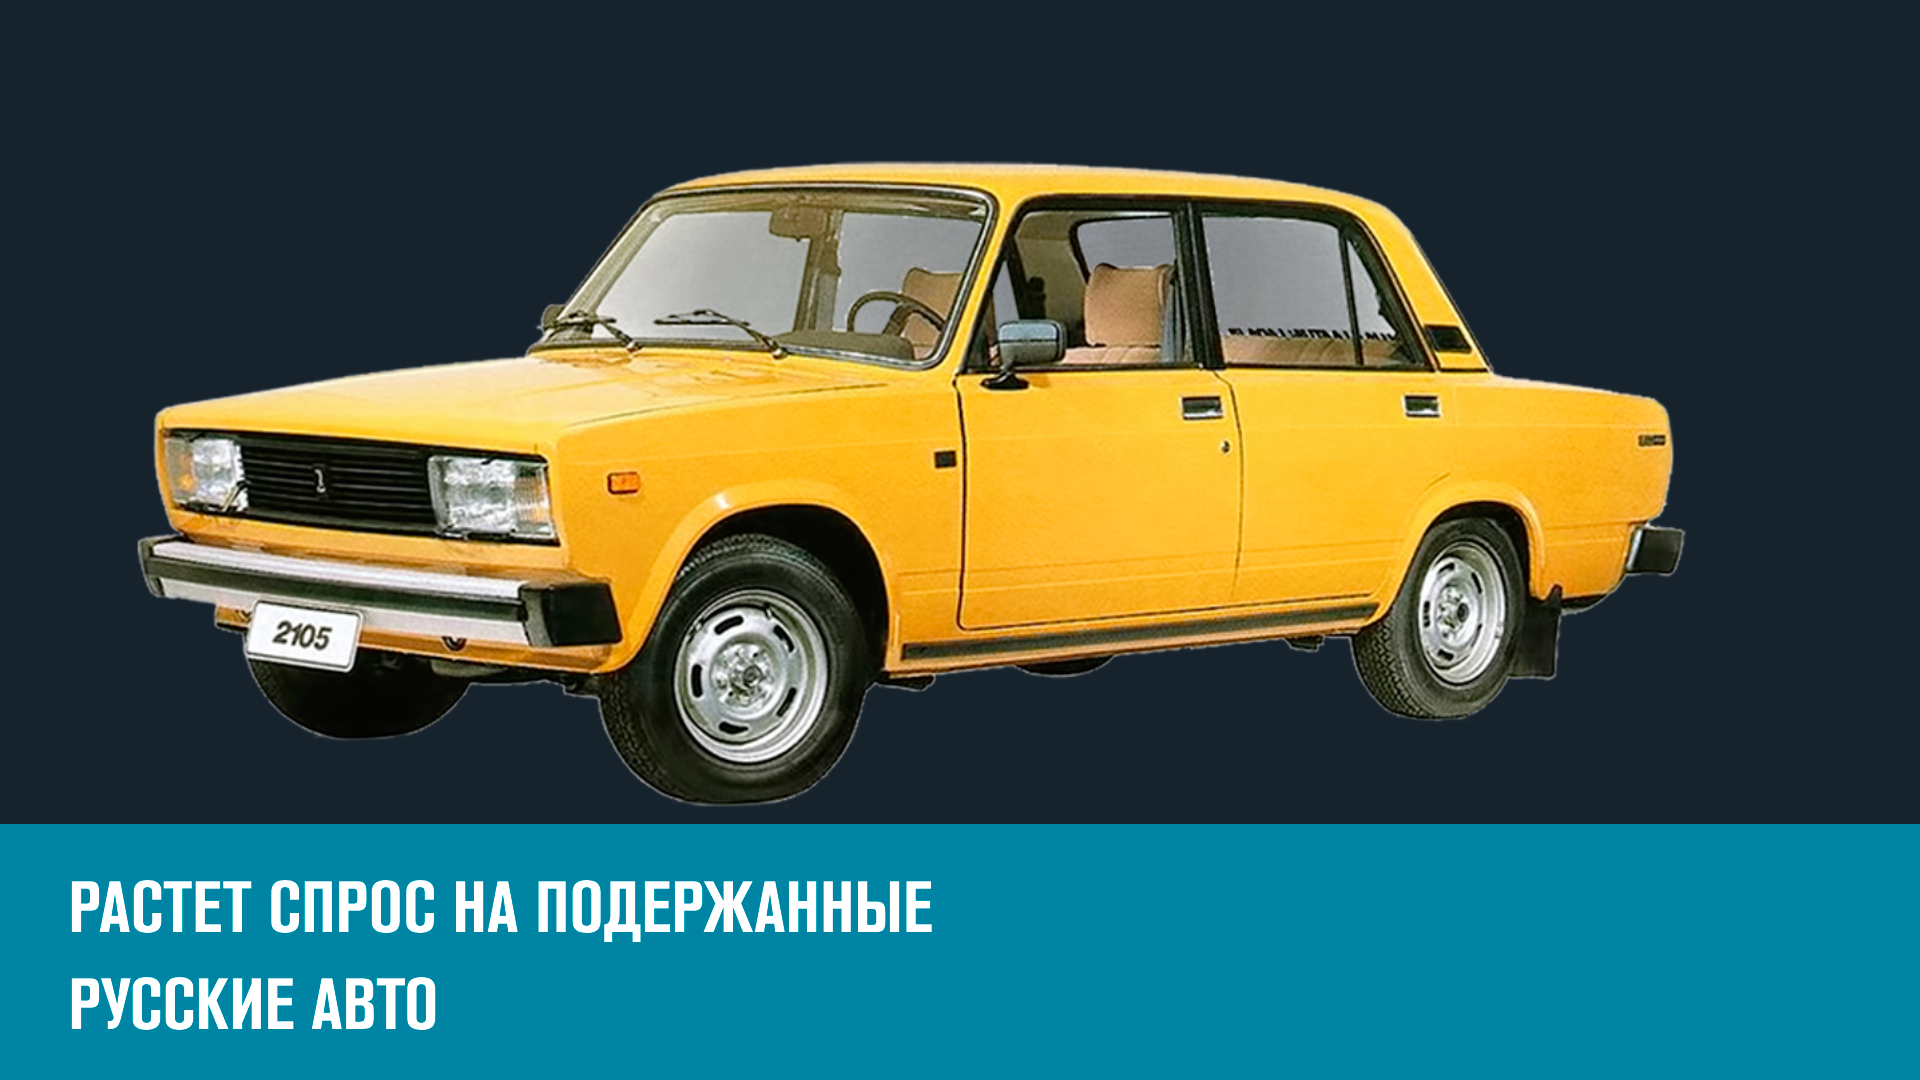 Почему россияне заинтересовались подержанными отечественными авто? - Эконом FAQ/Москва FM